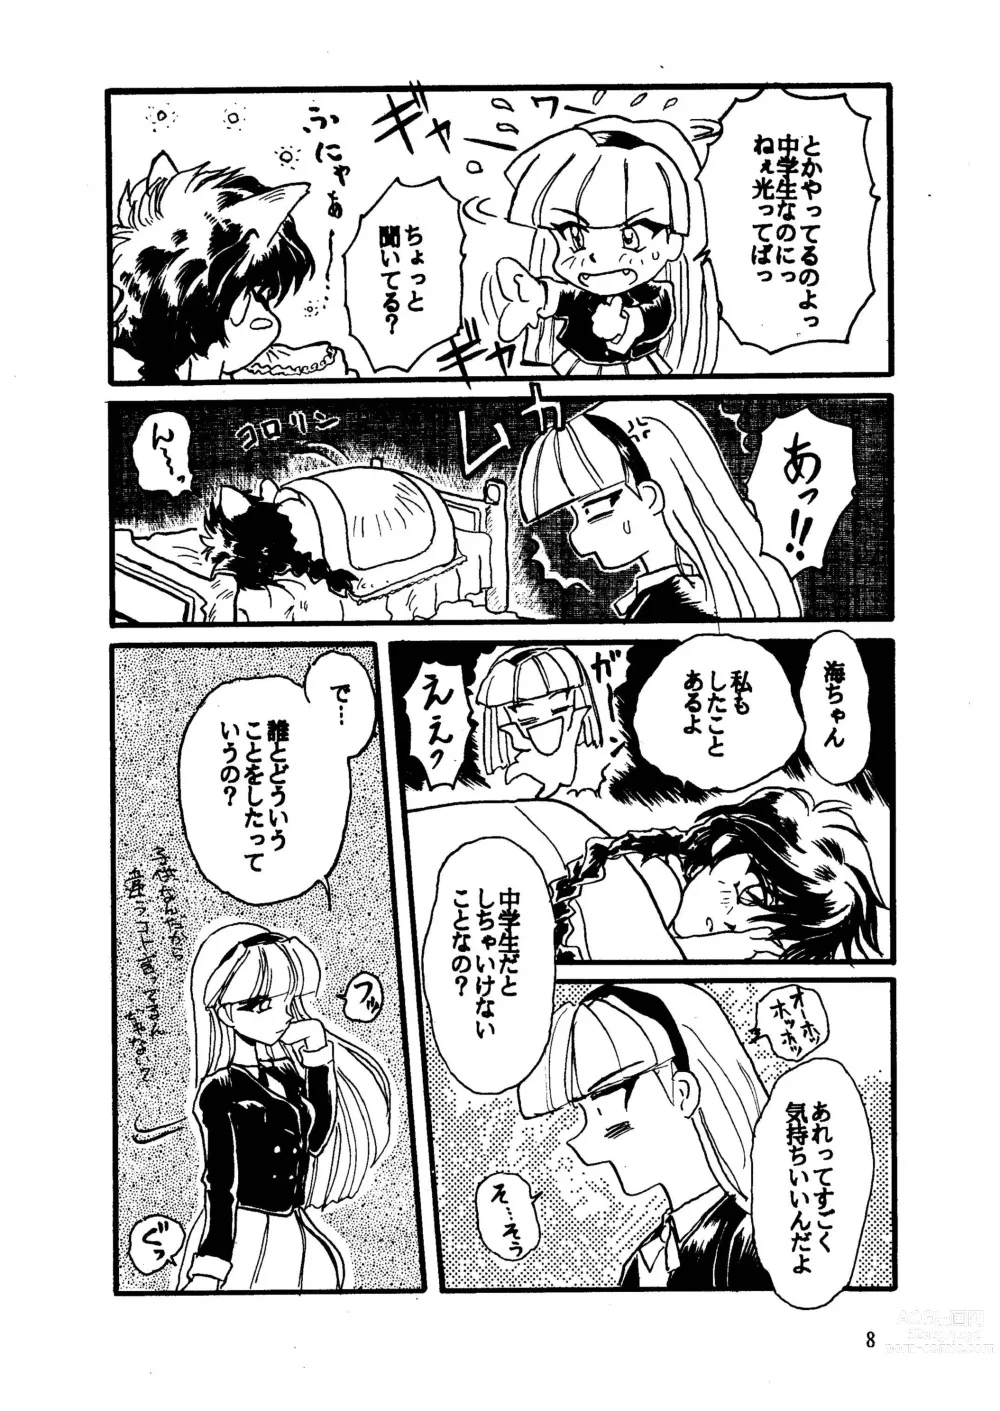 Page 8 of doujinshi GALTECH